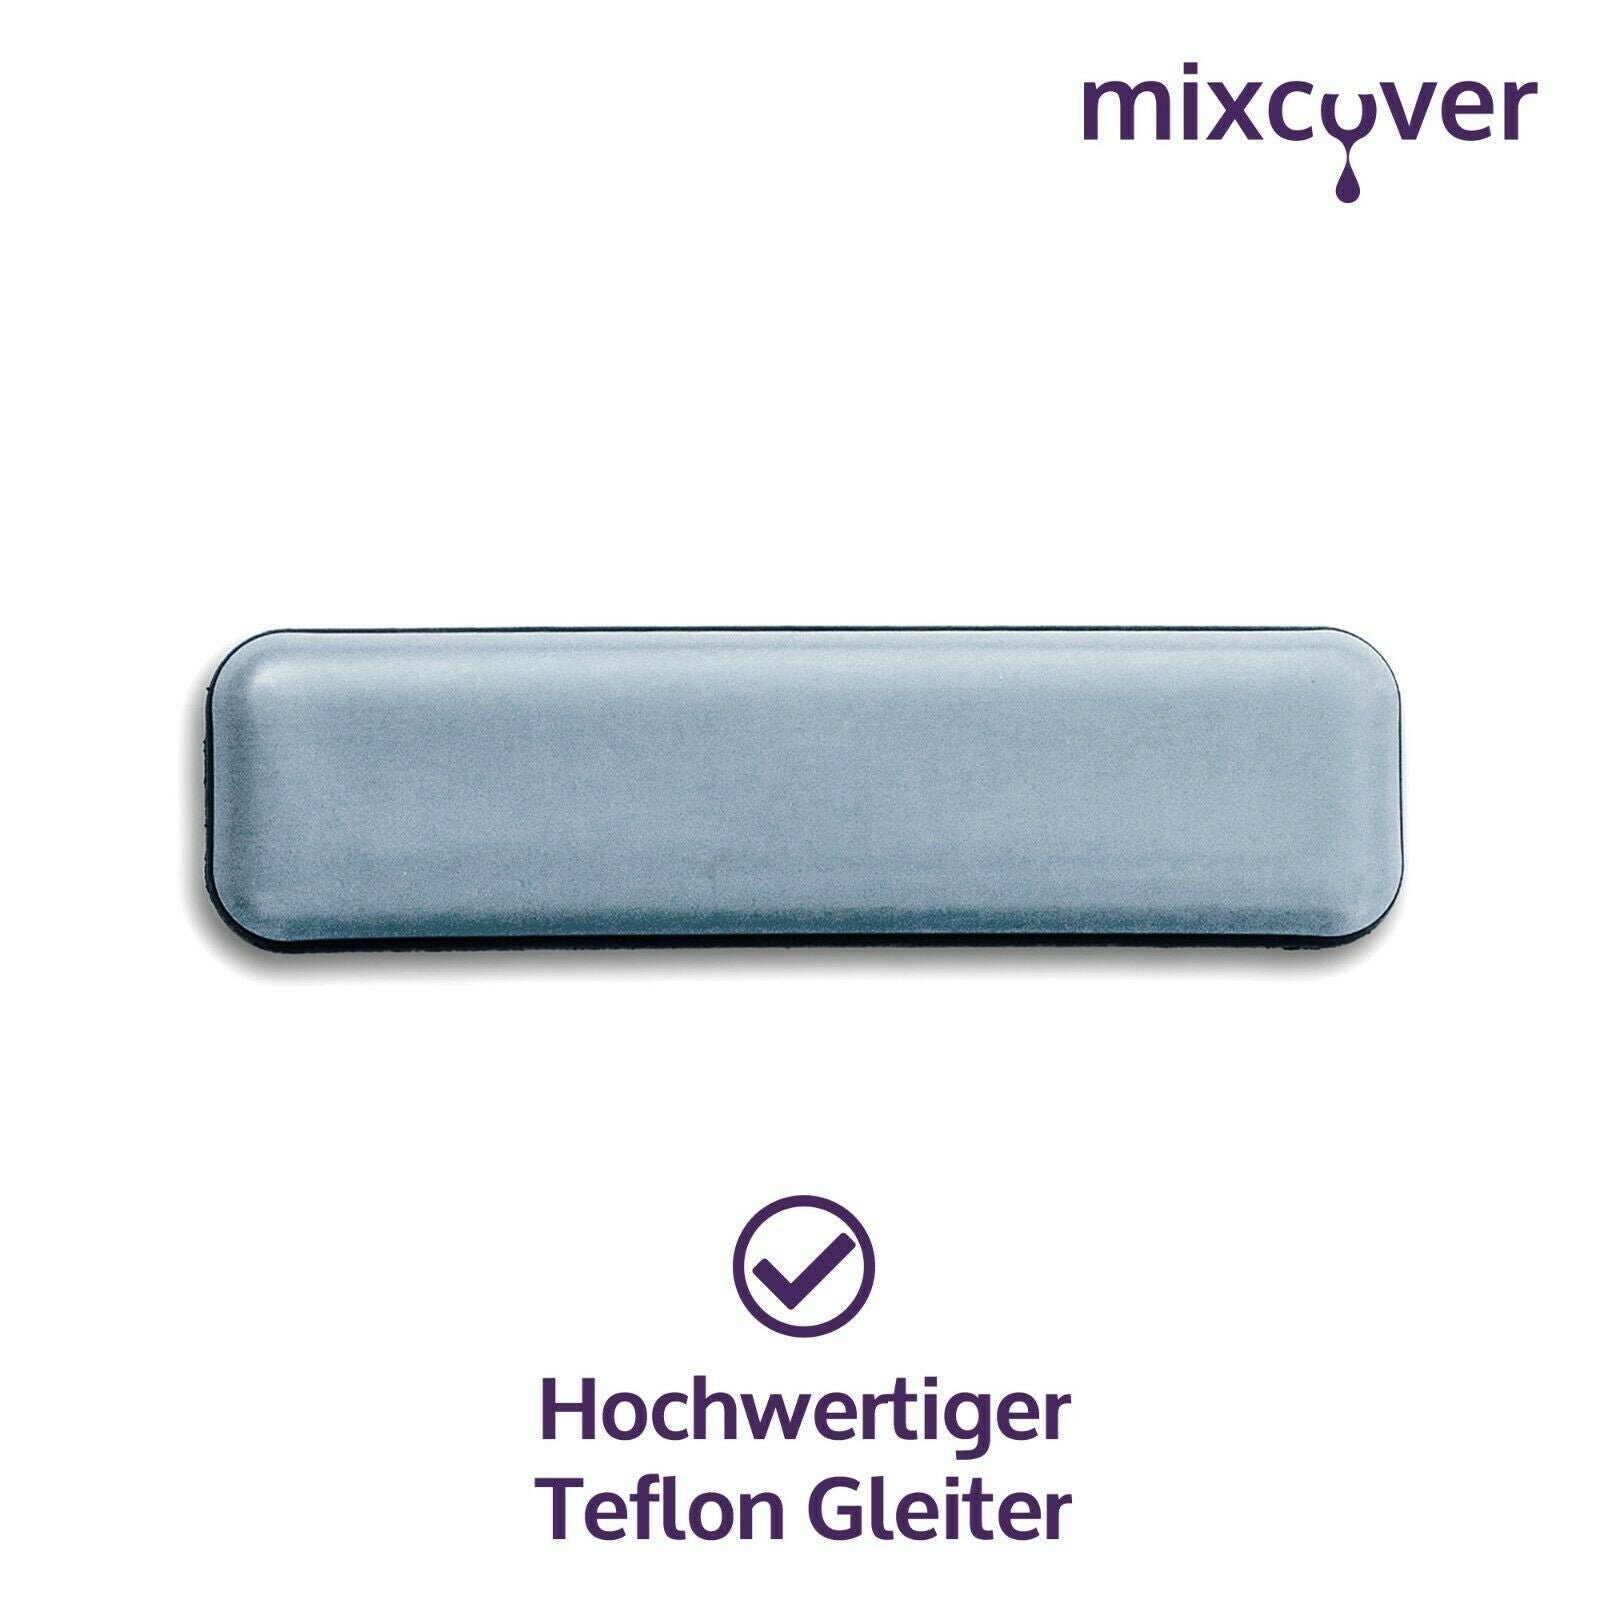 Mixcover Küchenmaschinen-Adapter mixcover Thermomix TM6 unsichtbare den & Set für 1er Gleiter/Slider TM5